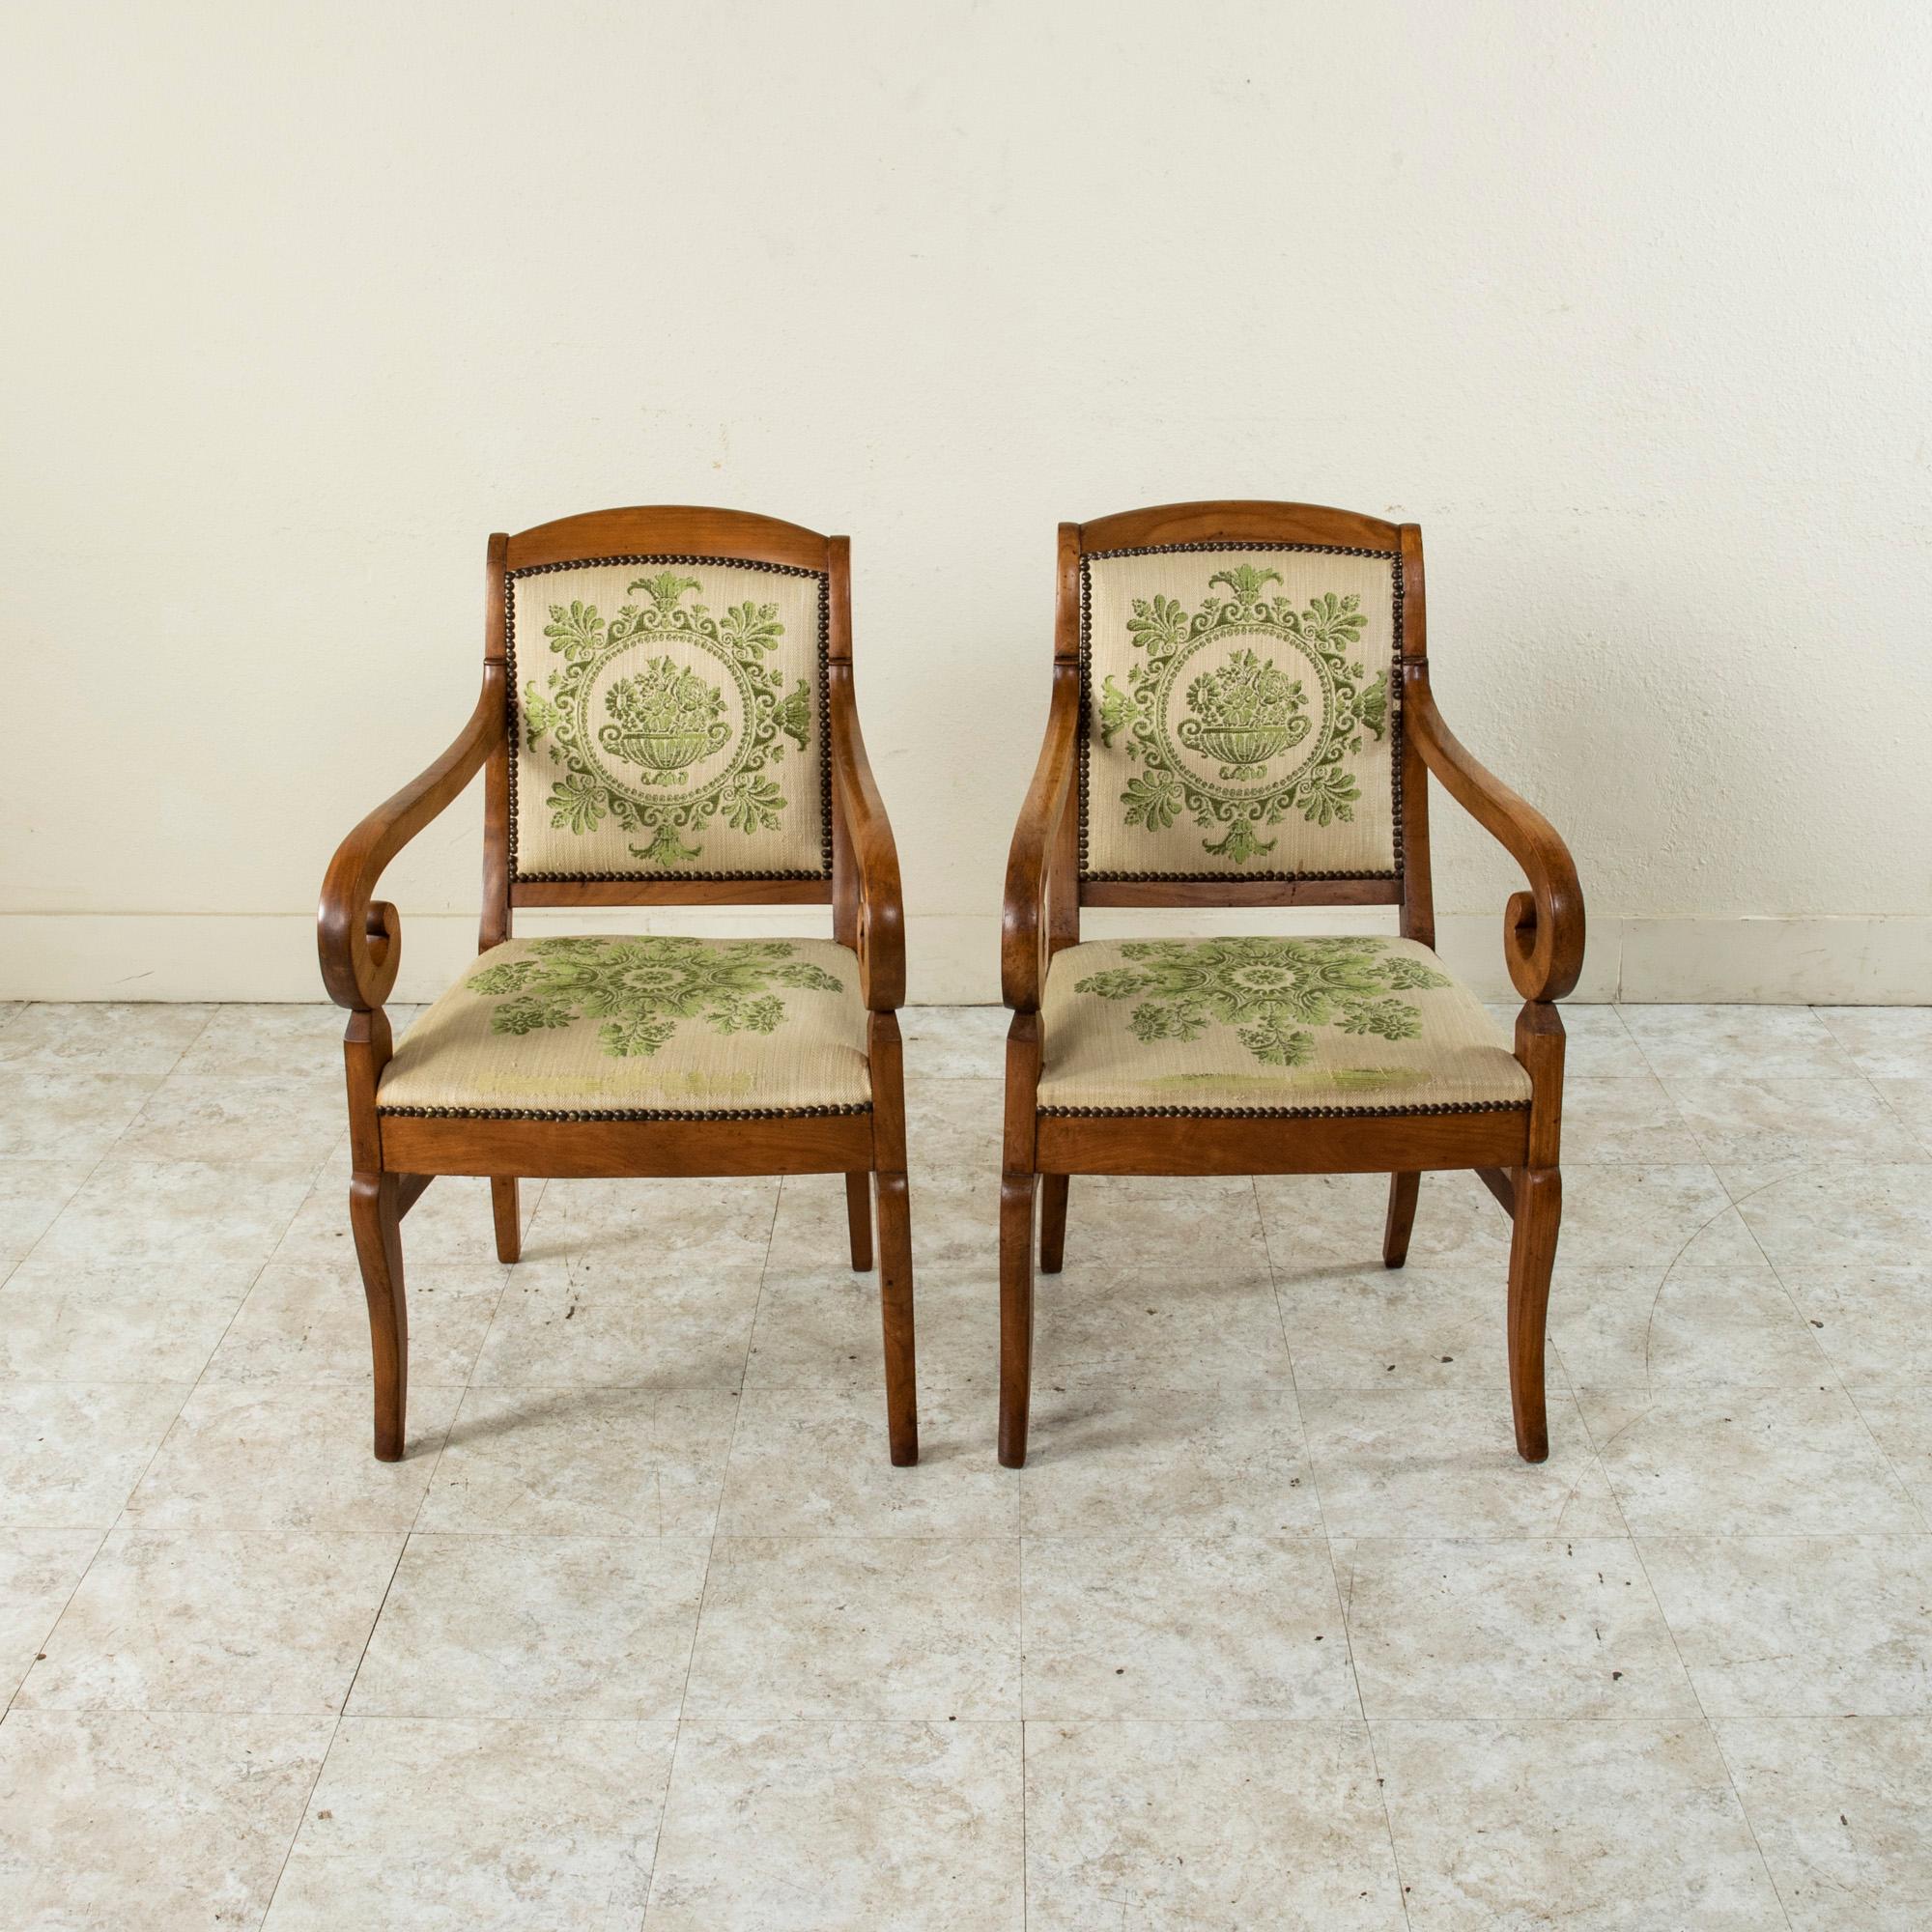 Dieses Paar französischer Sessel aus Nussbaum der Restaurationszeit aus dem frühen neunzehnten Jahrhundert zeichnet sich durch geschwungene Arme und sanft geschwungene Beine aus. Die Hinterbeine sind 